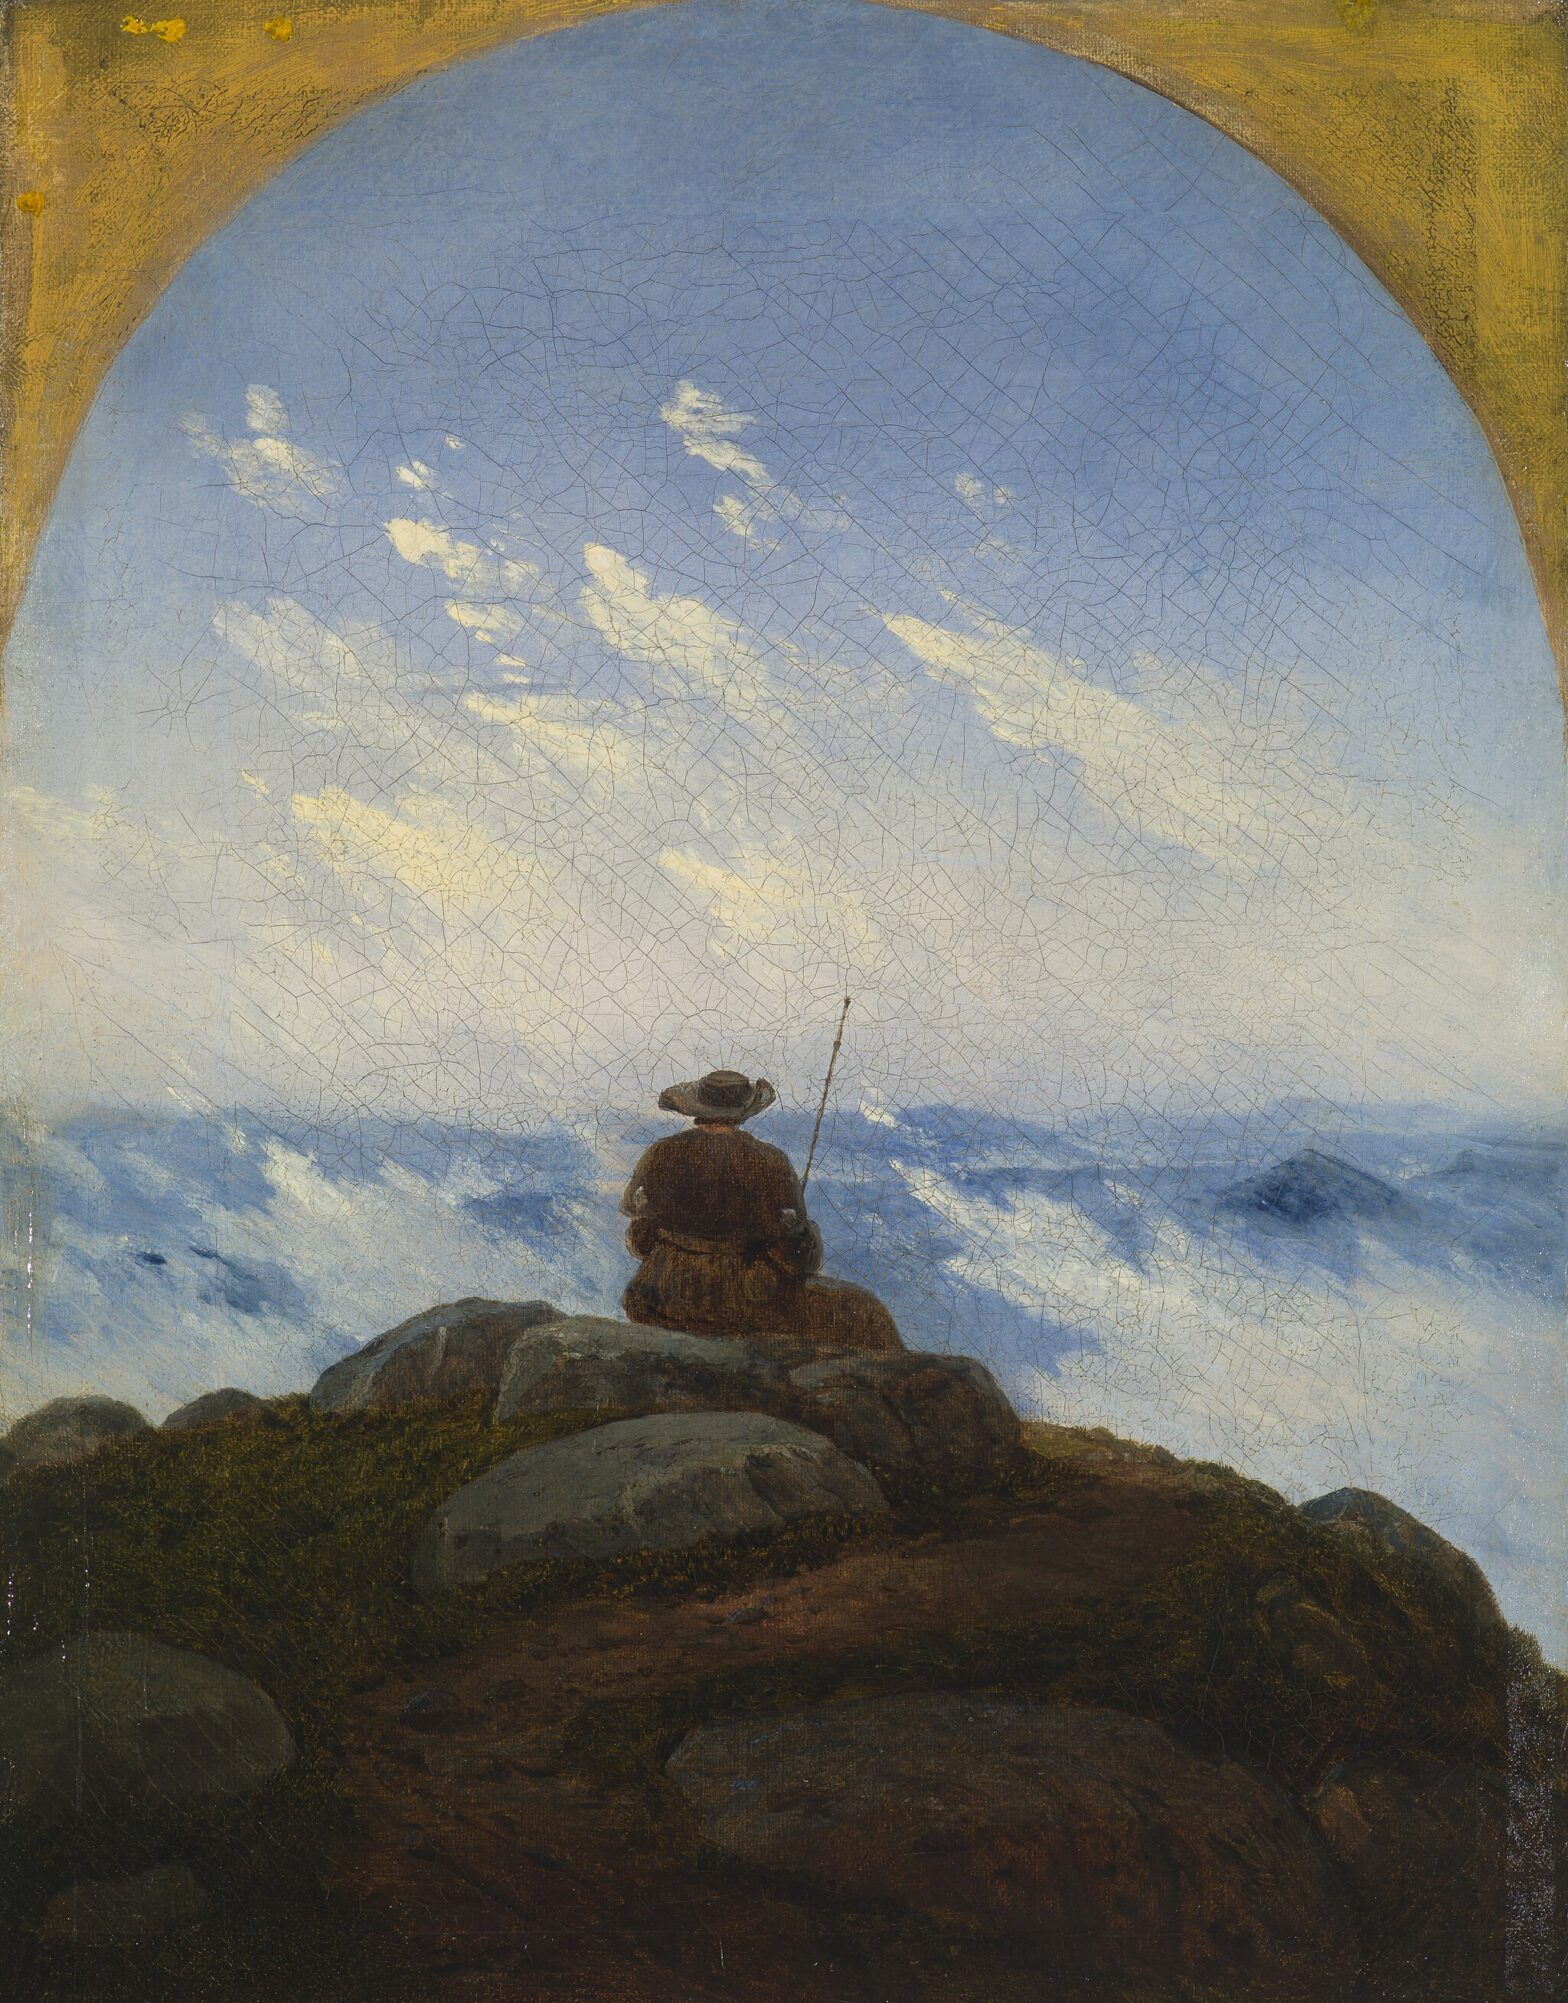 Pilger auf einem Berg von Carl Gustav Carus, 1818